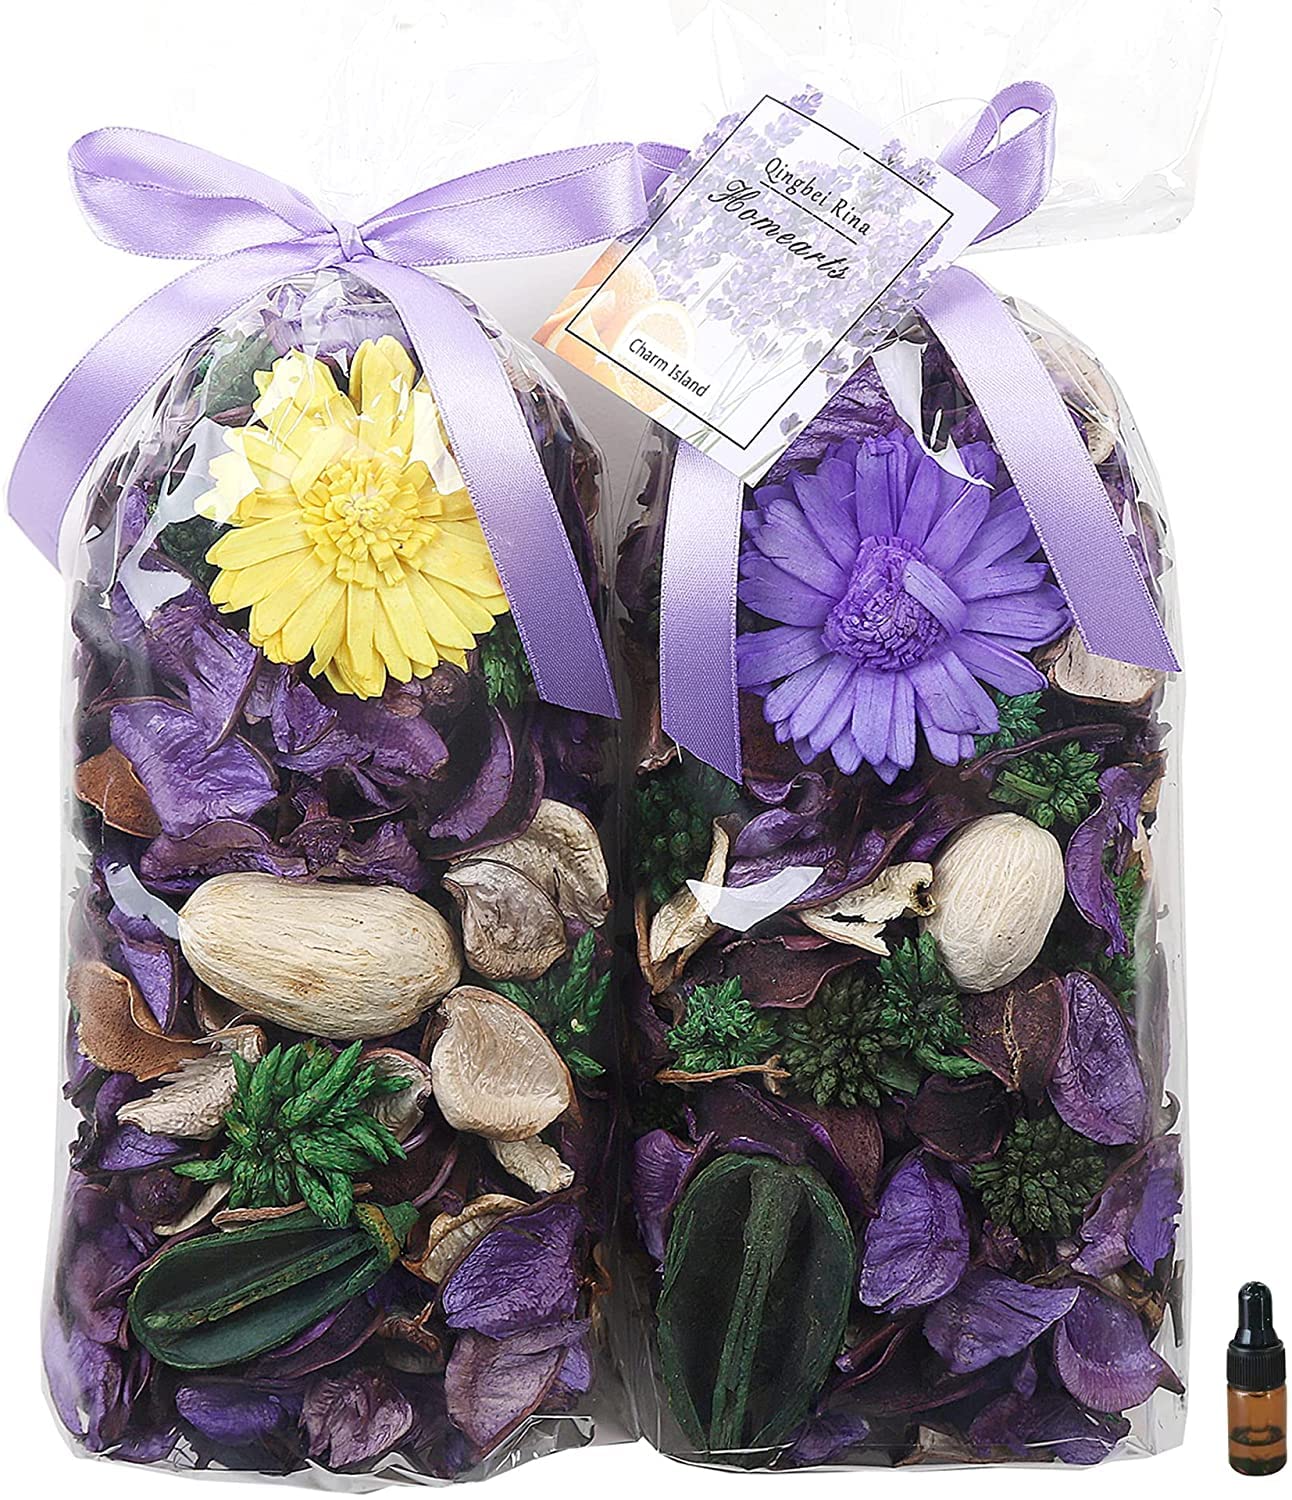 Qingbei Rina Winter Potpourri Bags, Purple Potpourri Bowl Filler, Lavender Scent Decorative Dried Flowers, Home Fragrance Sachet